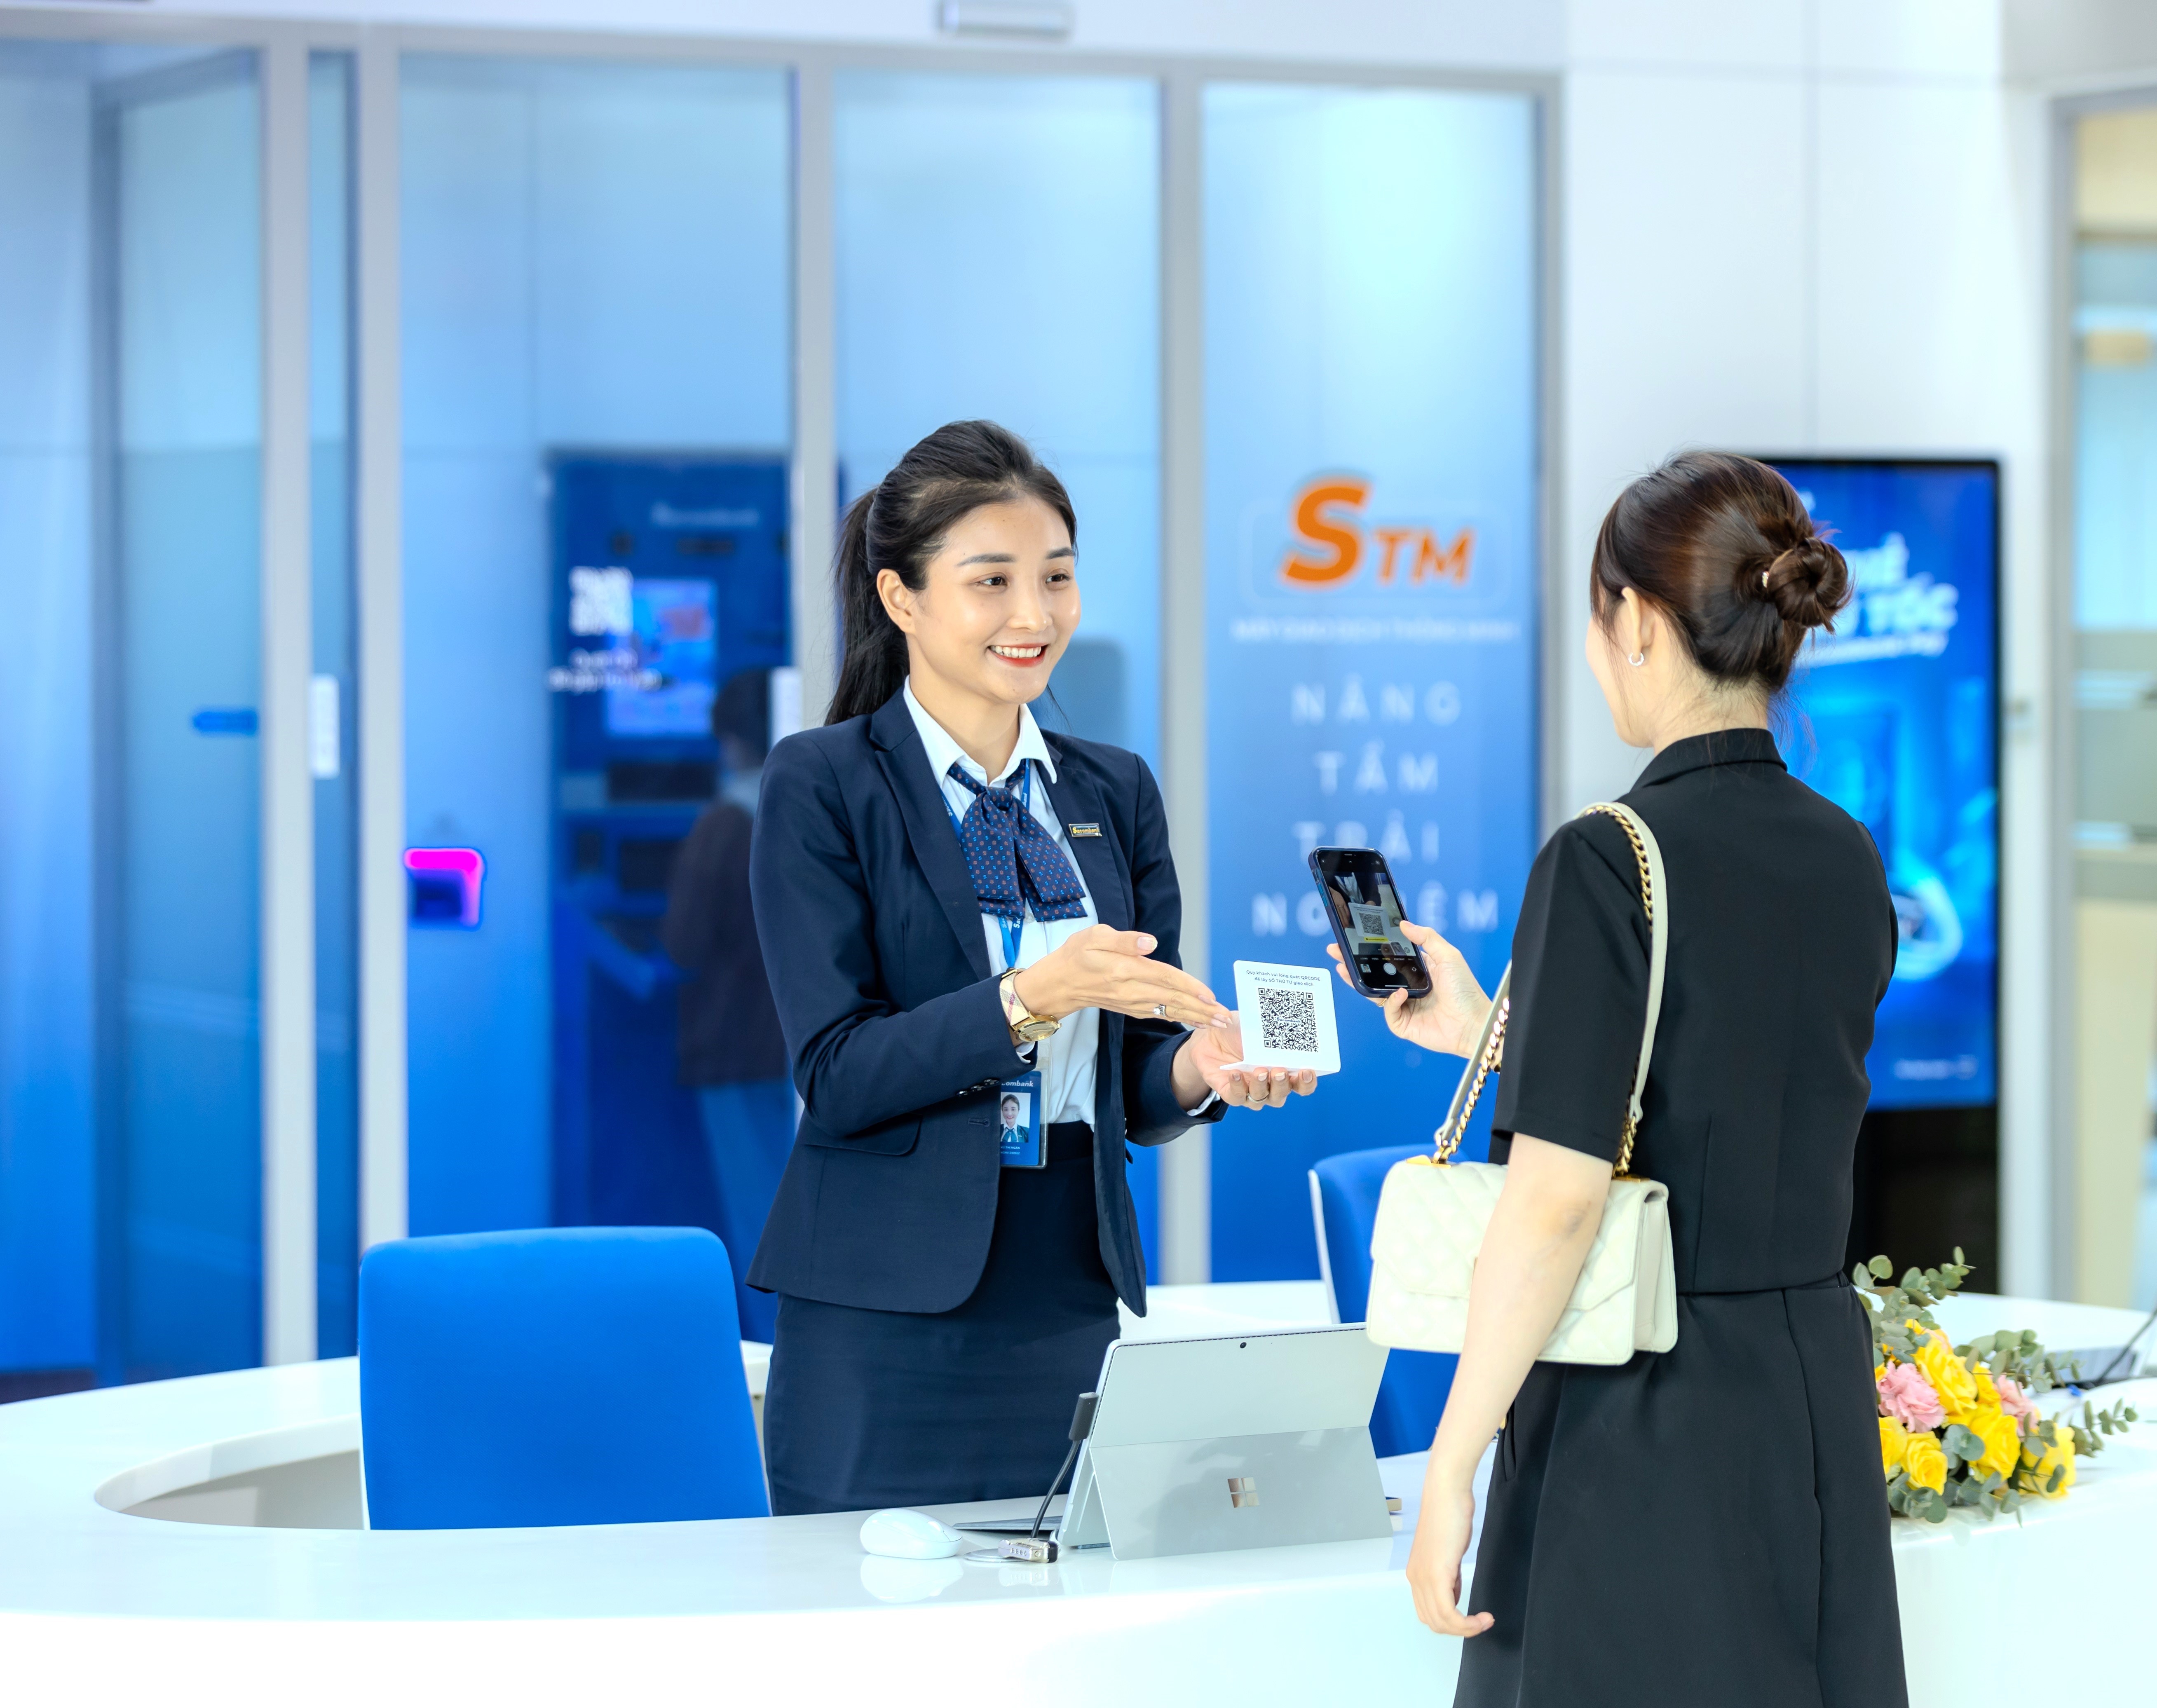 Sacombank đẩy mạnh ứng dụng công nghệ để gia tăng các tiện ích và hiện đại hóa sản phẩm dịch vụ nhằm thu hút và nâng cao trải nghiệm khách hang.